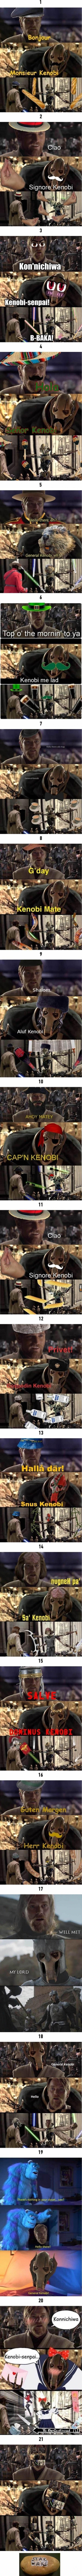 Podsumowanie mema o generale Obi-Wanie